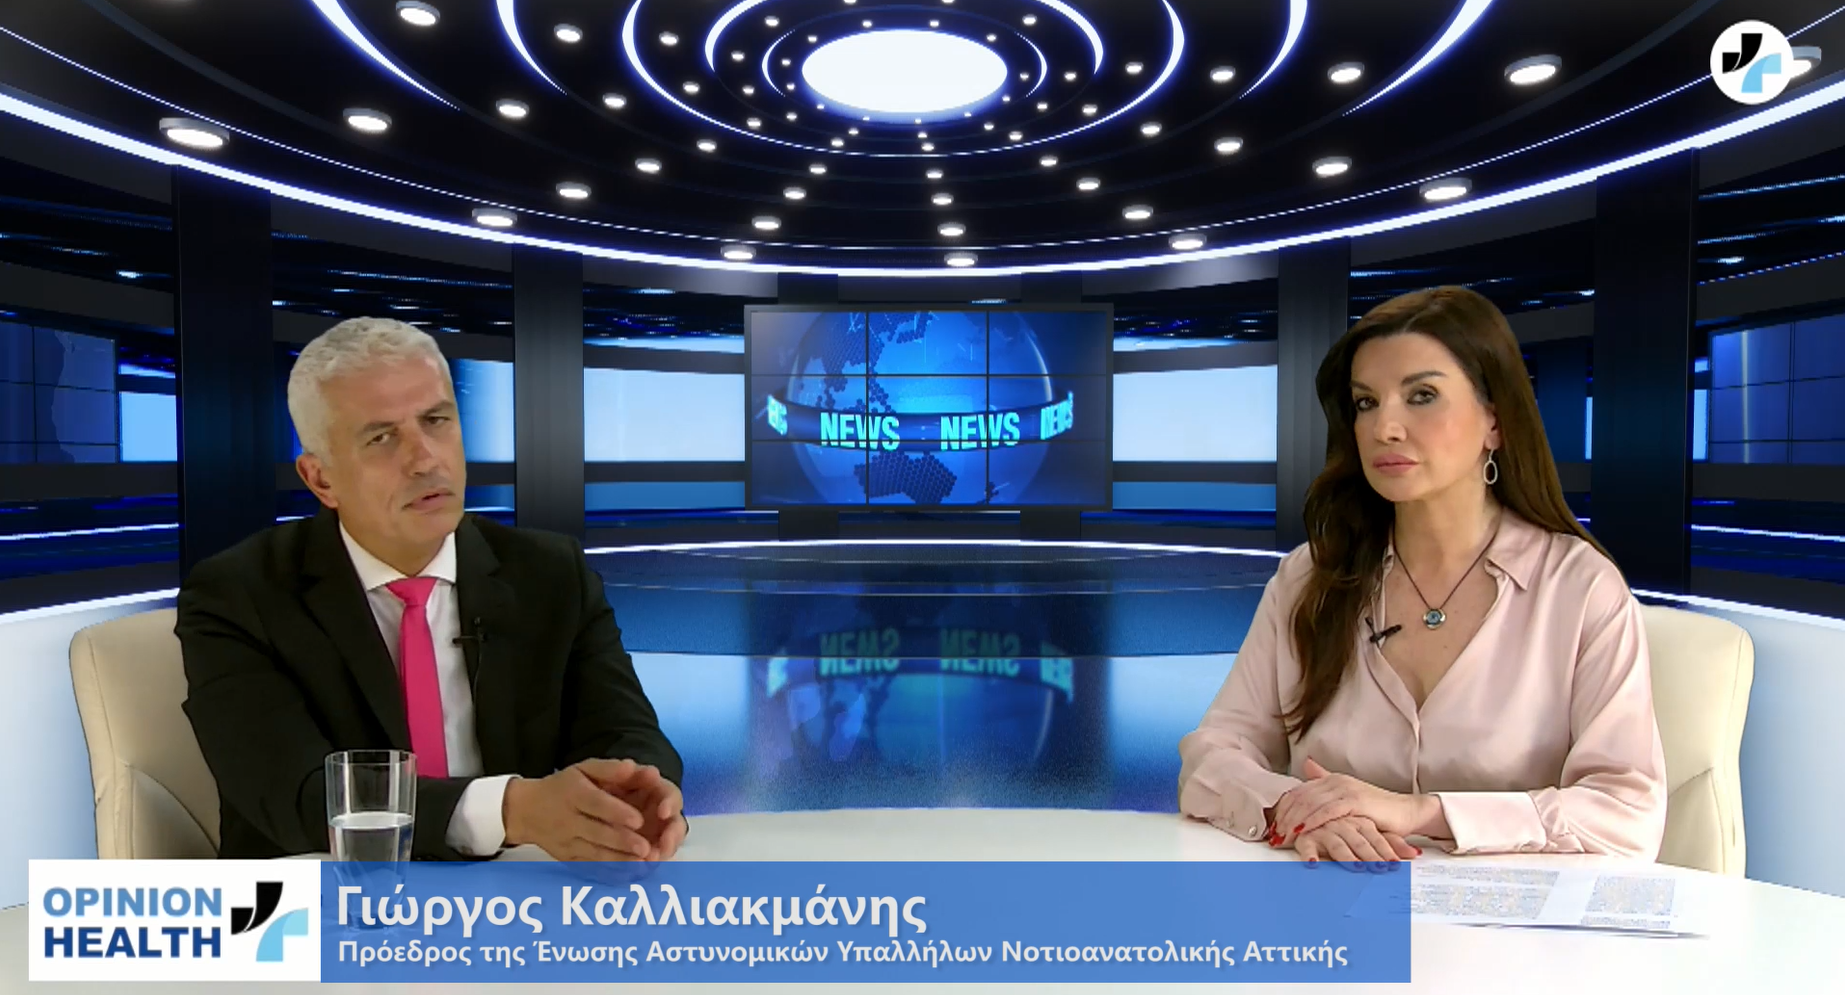 Γ.Καλλιακμάνης μιλάει στο healthweb για τo φακελάκι των γιατρών στο ΕΣΥ,την  χρήση κοκαΐνης στην Ελλάδα και τις γυναικοκτονίες 